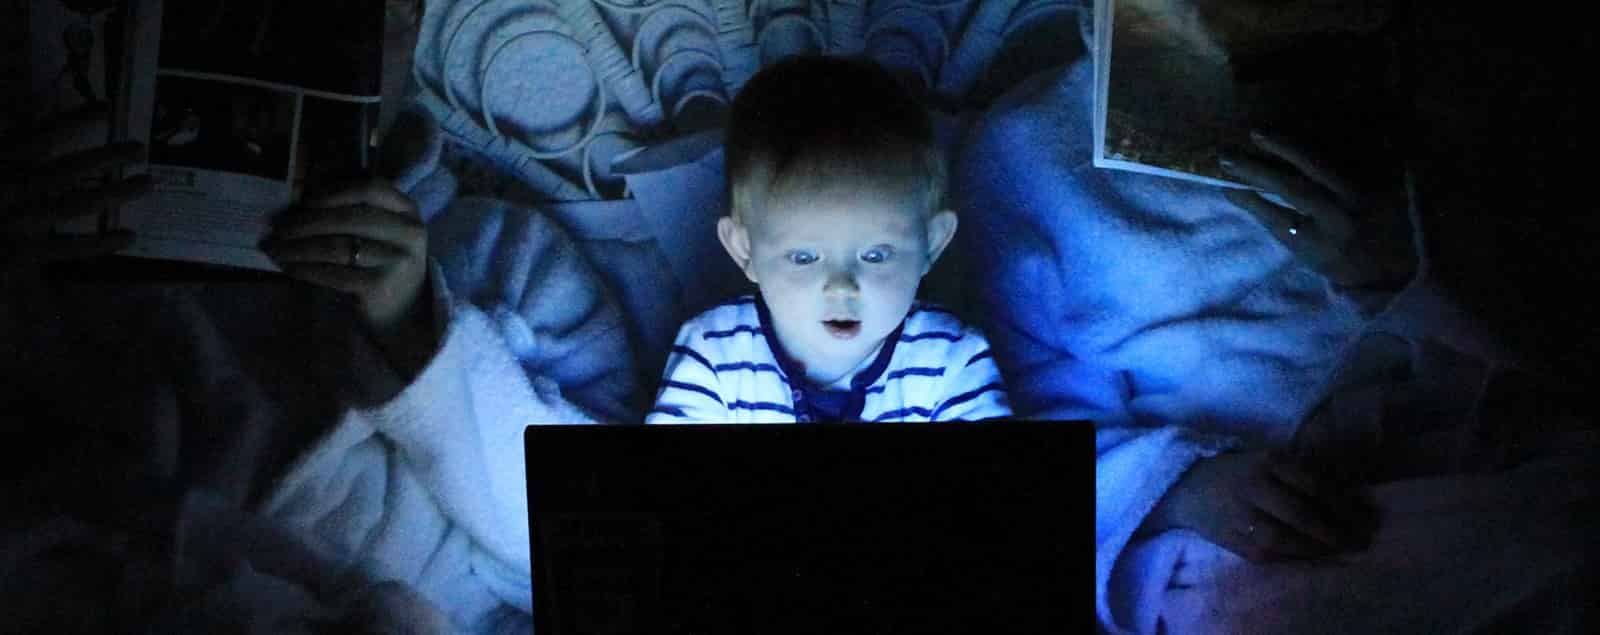 Child using laptop in dark